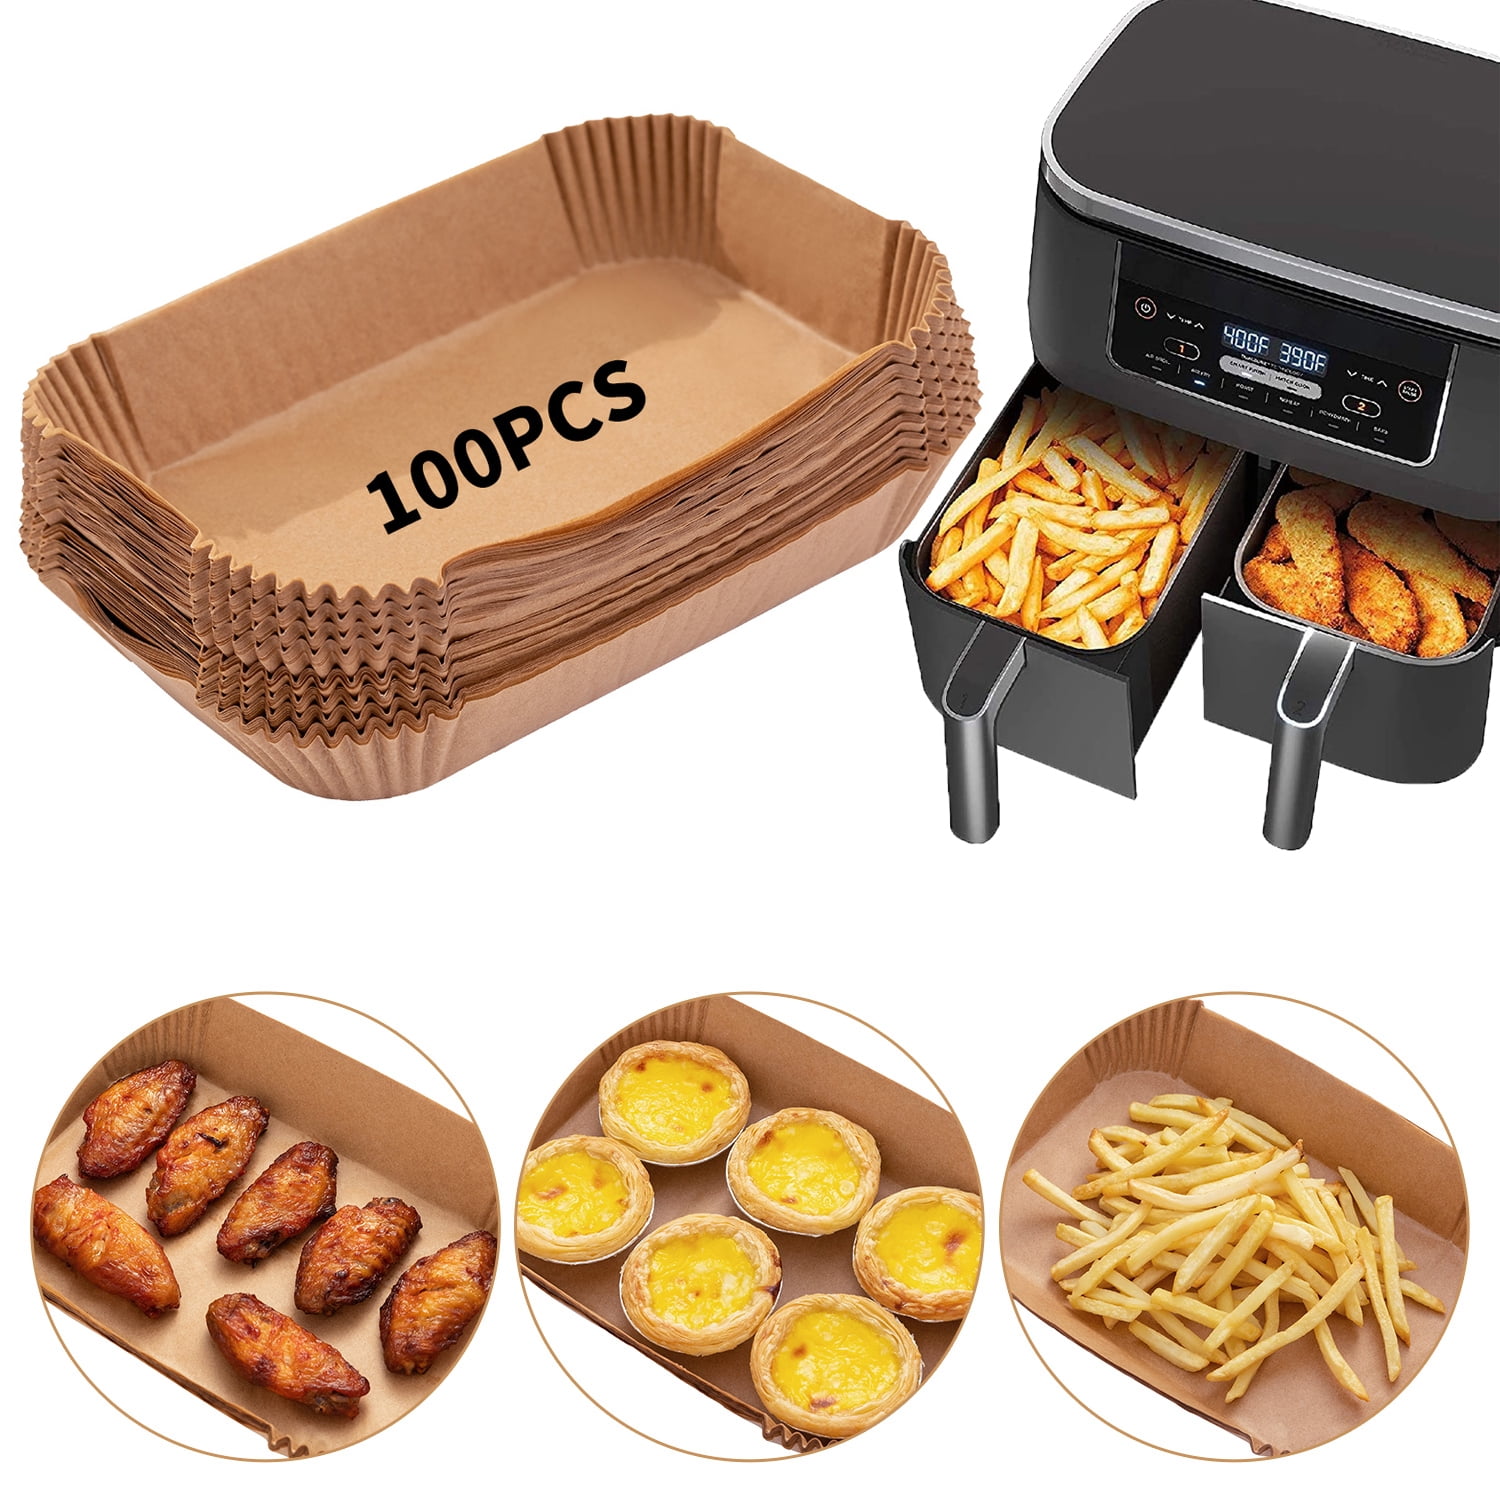 Dual Basket Air Fryer Accessories, 15pcs Set for Ninja DZ401 DZ201 Foodi  Dualzone Air Fryers with 100pcs Air Fryer Liners, 2 Non-Stick Pans